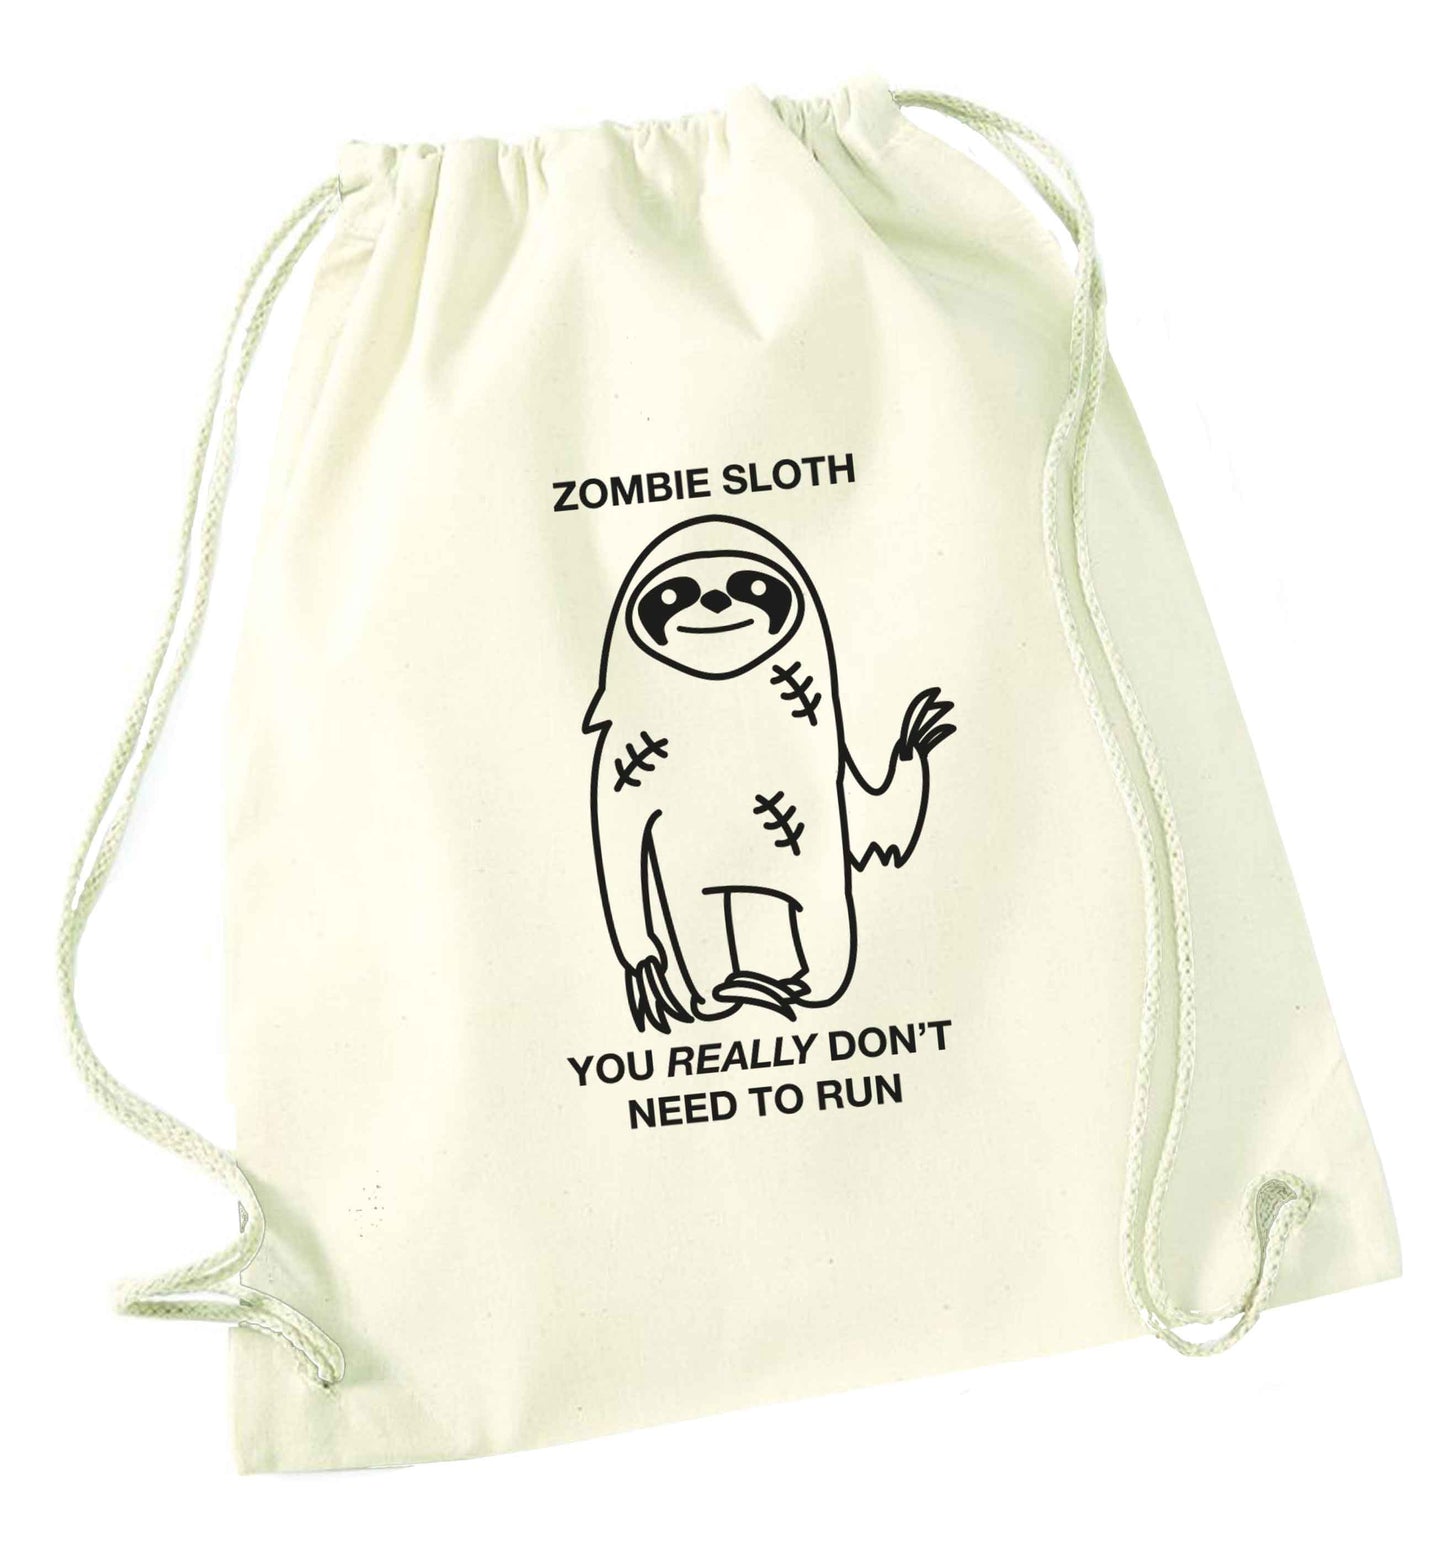 Zombie sloth you really don't need to run natural drawstring bag